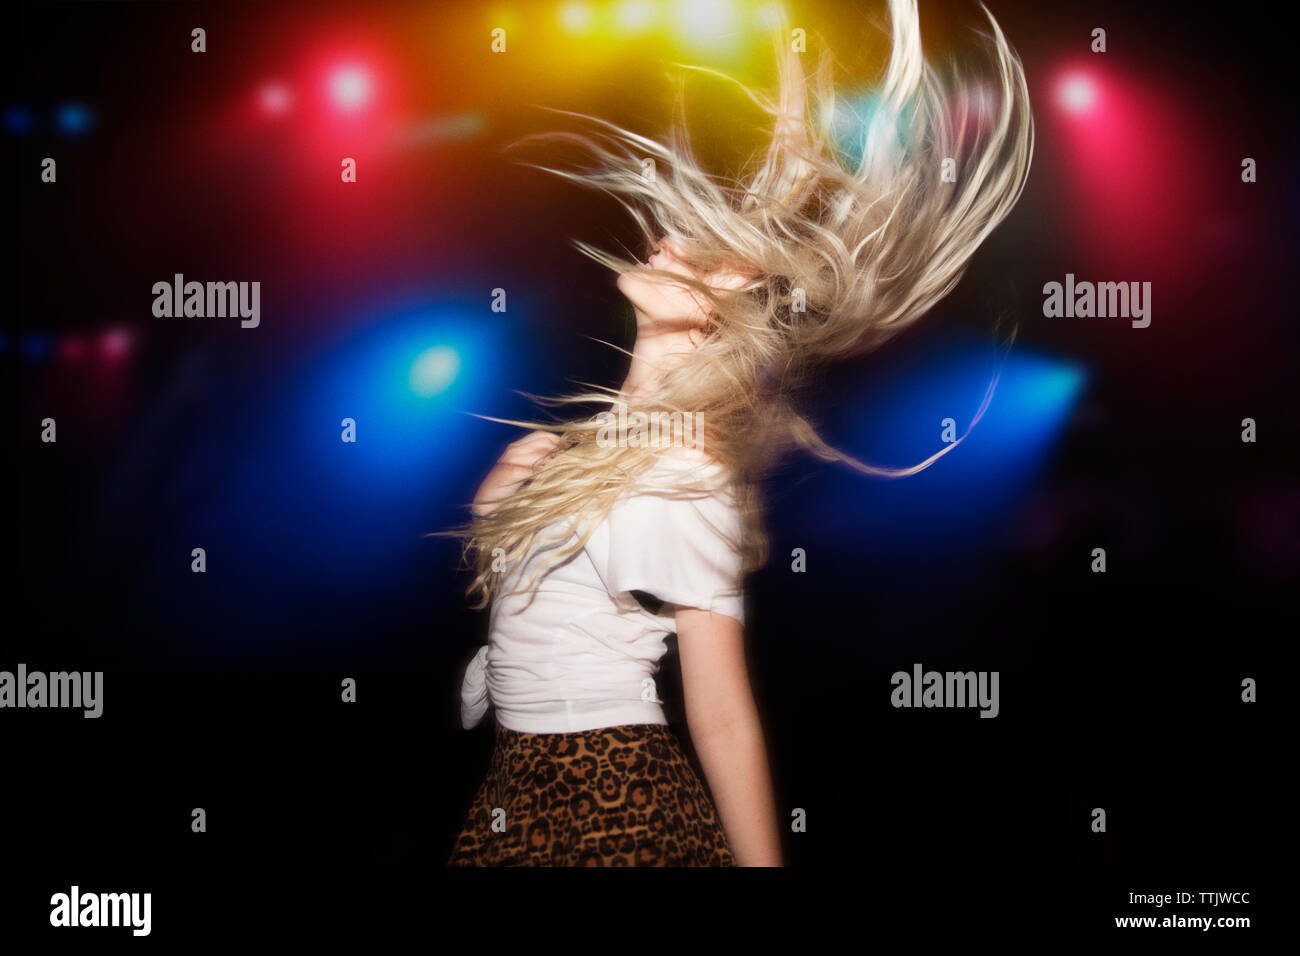 Mujer con cabello deslucido bailando contra encendido luces multicolores en garden party Foto de stock